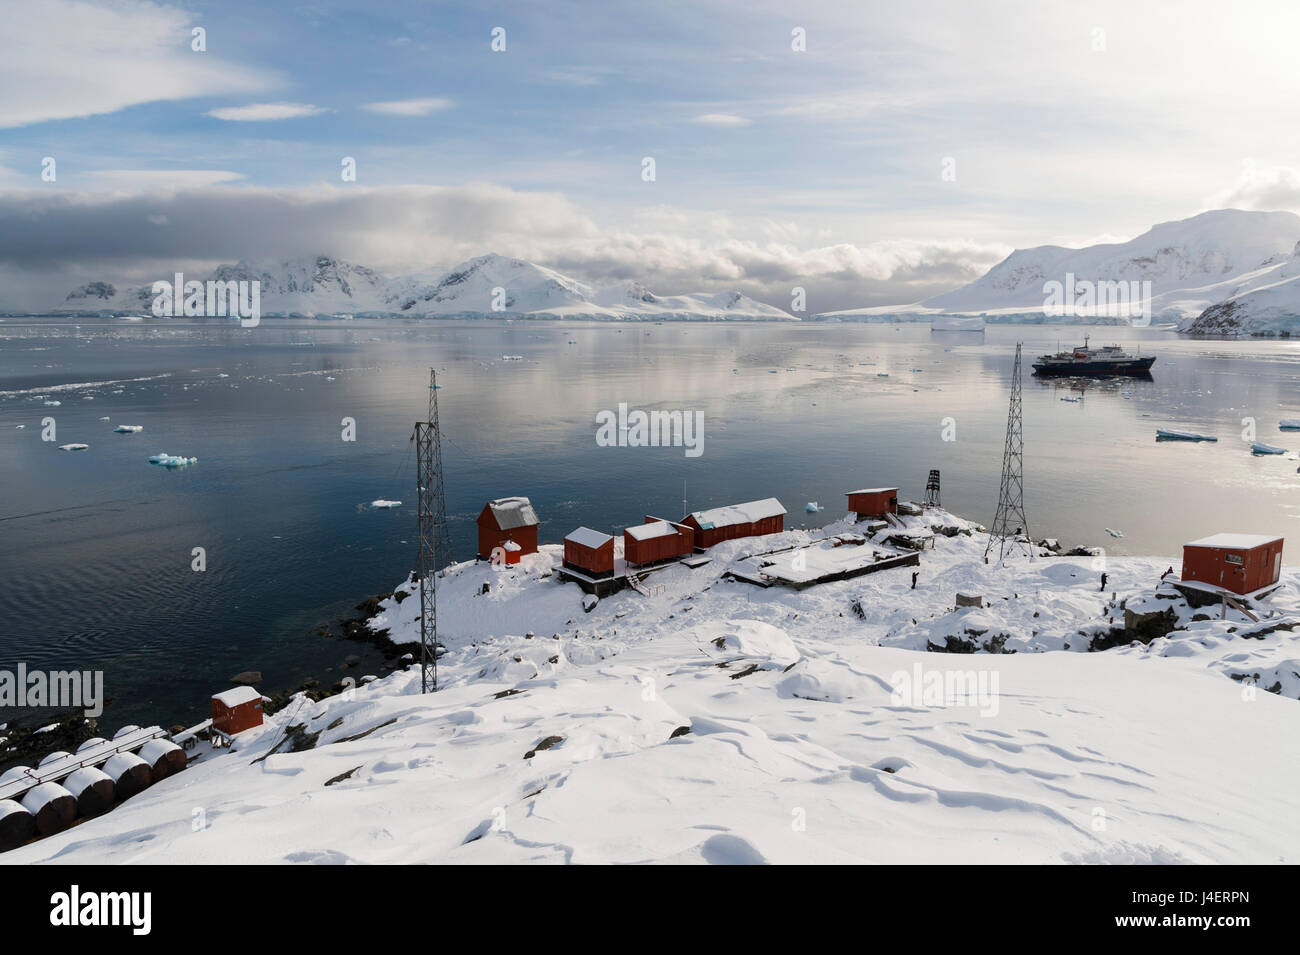 La Estación argentina Almirante Brown, Bahía Paraíso, Antártida, regiones polares Foto de stock